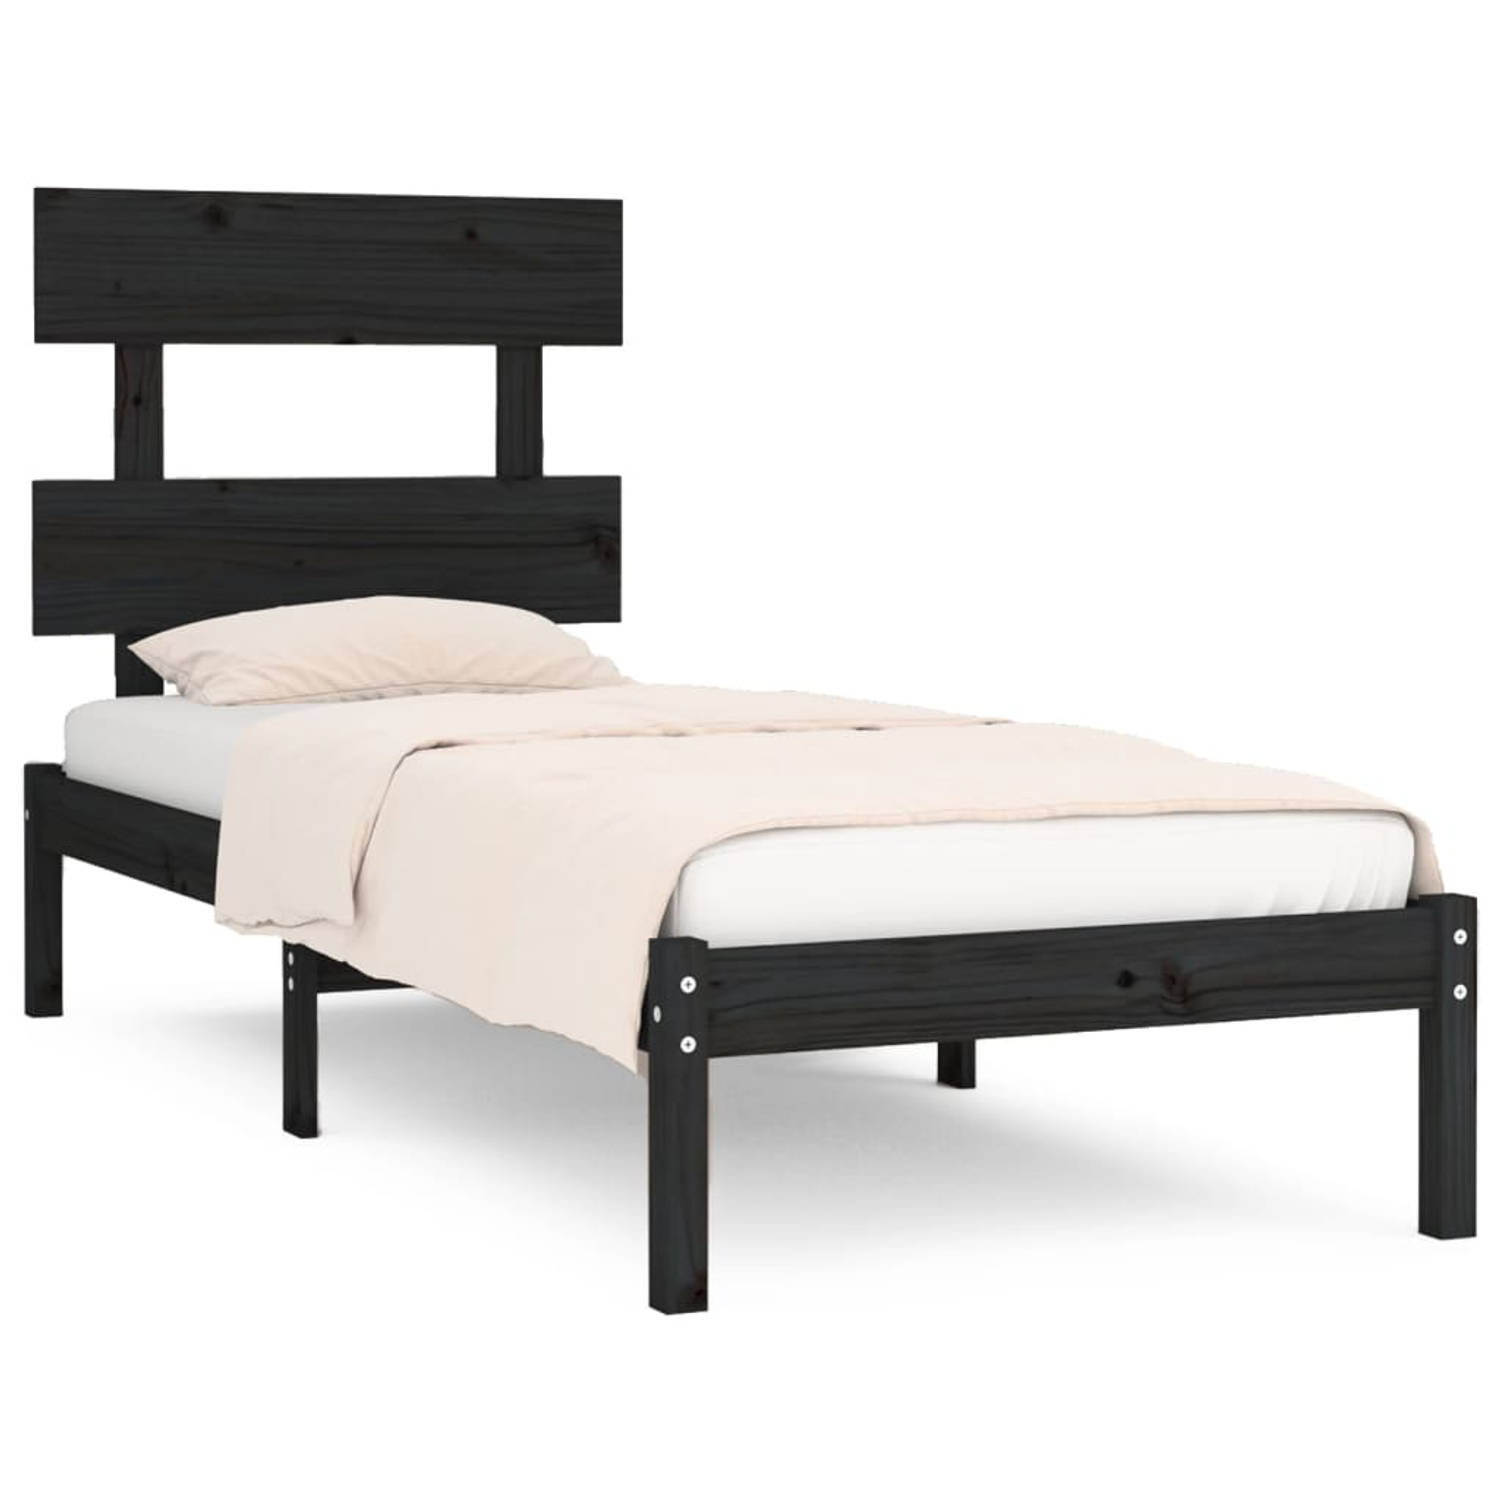 The Living Store Bedframe massief hout zwart 100x200 cm - Bedframe - Bedframes - Eenpersoonsbed - Bed - Bedombouw - Frame - Bed Frame - Ledikant - Bedframe Met Hoofdeinde - Eenpers